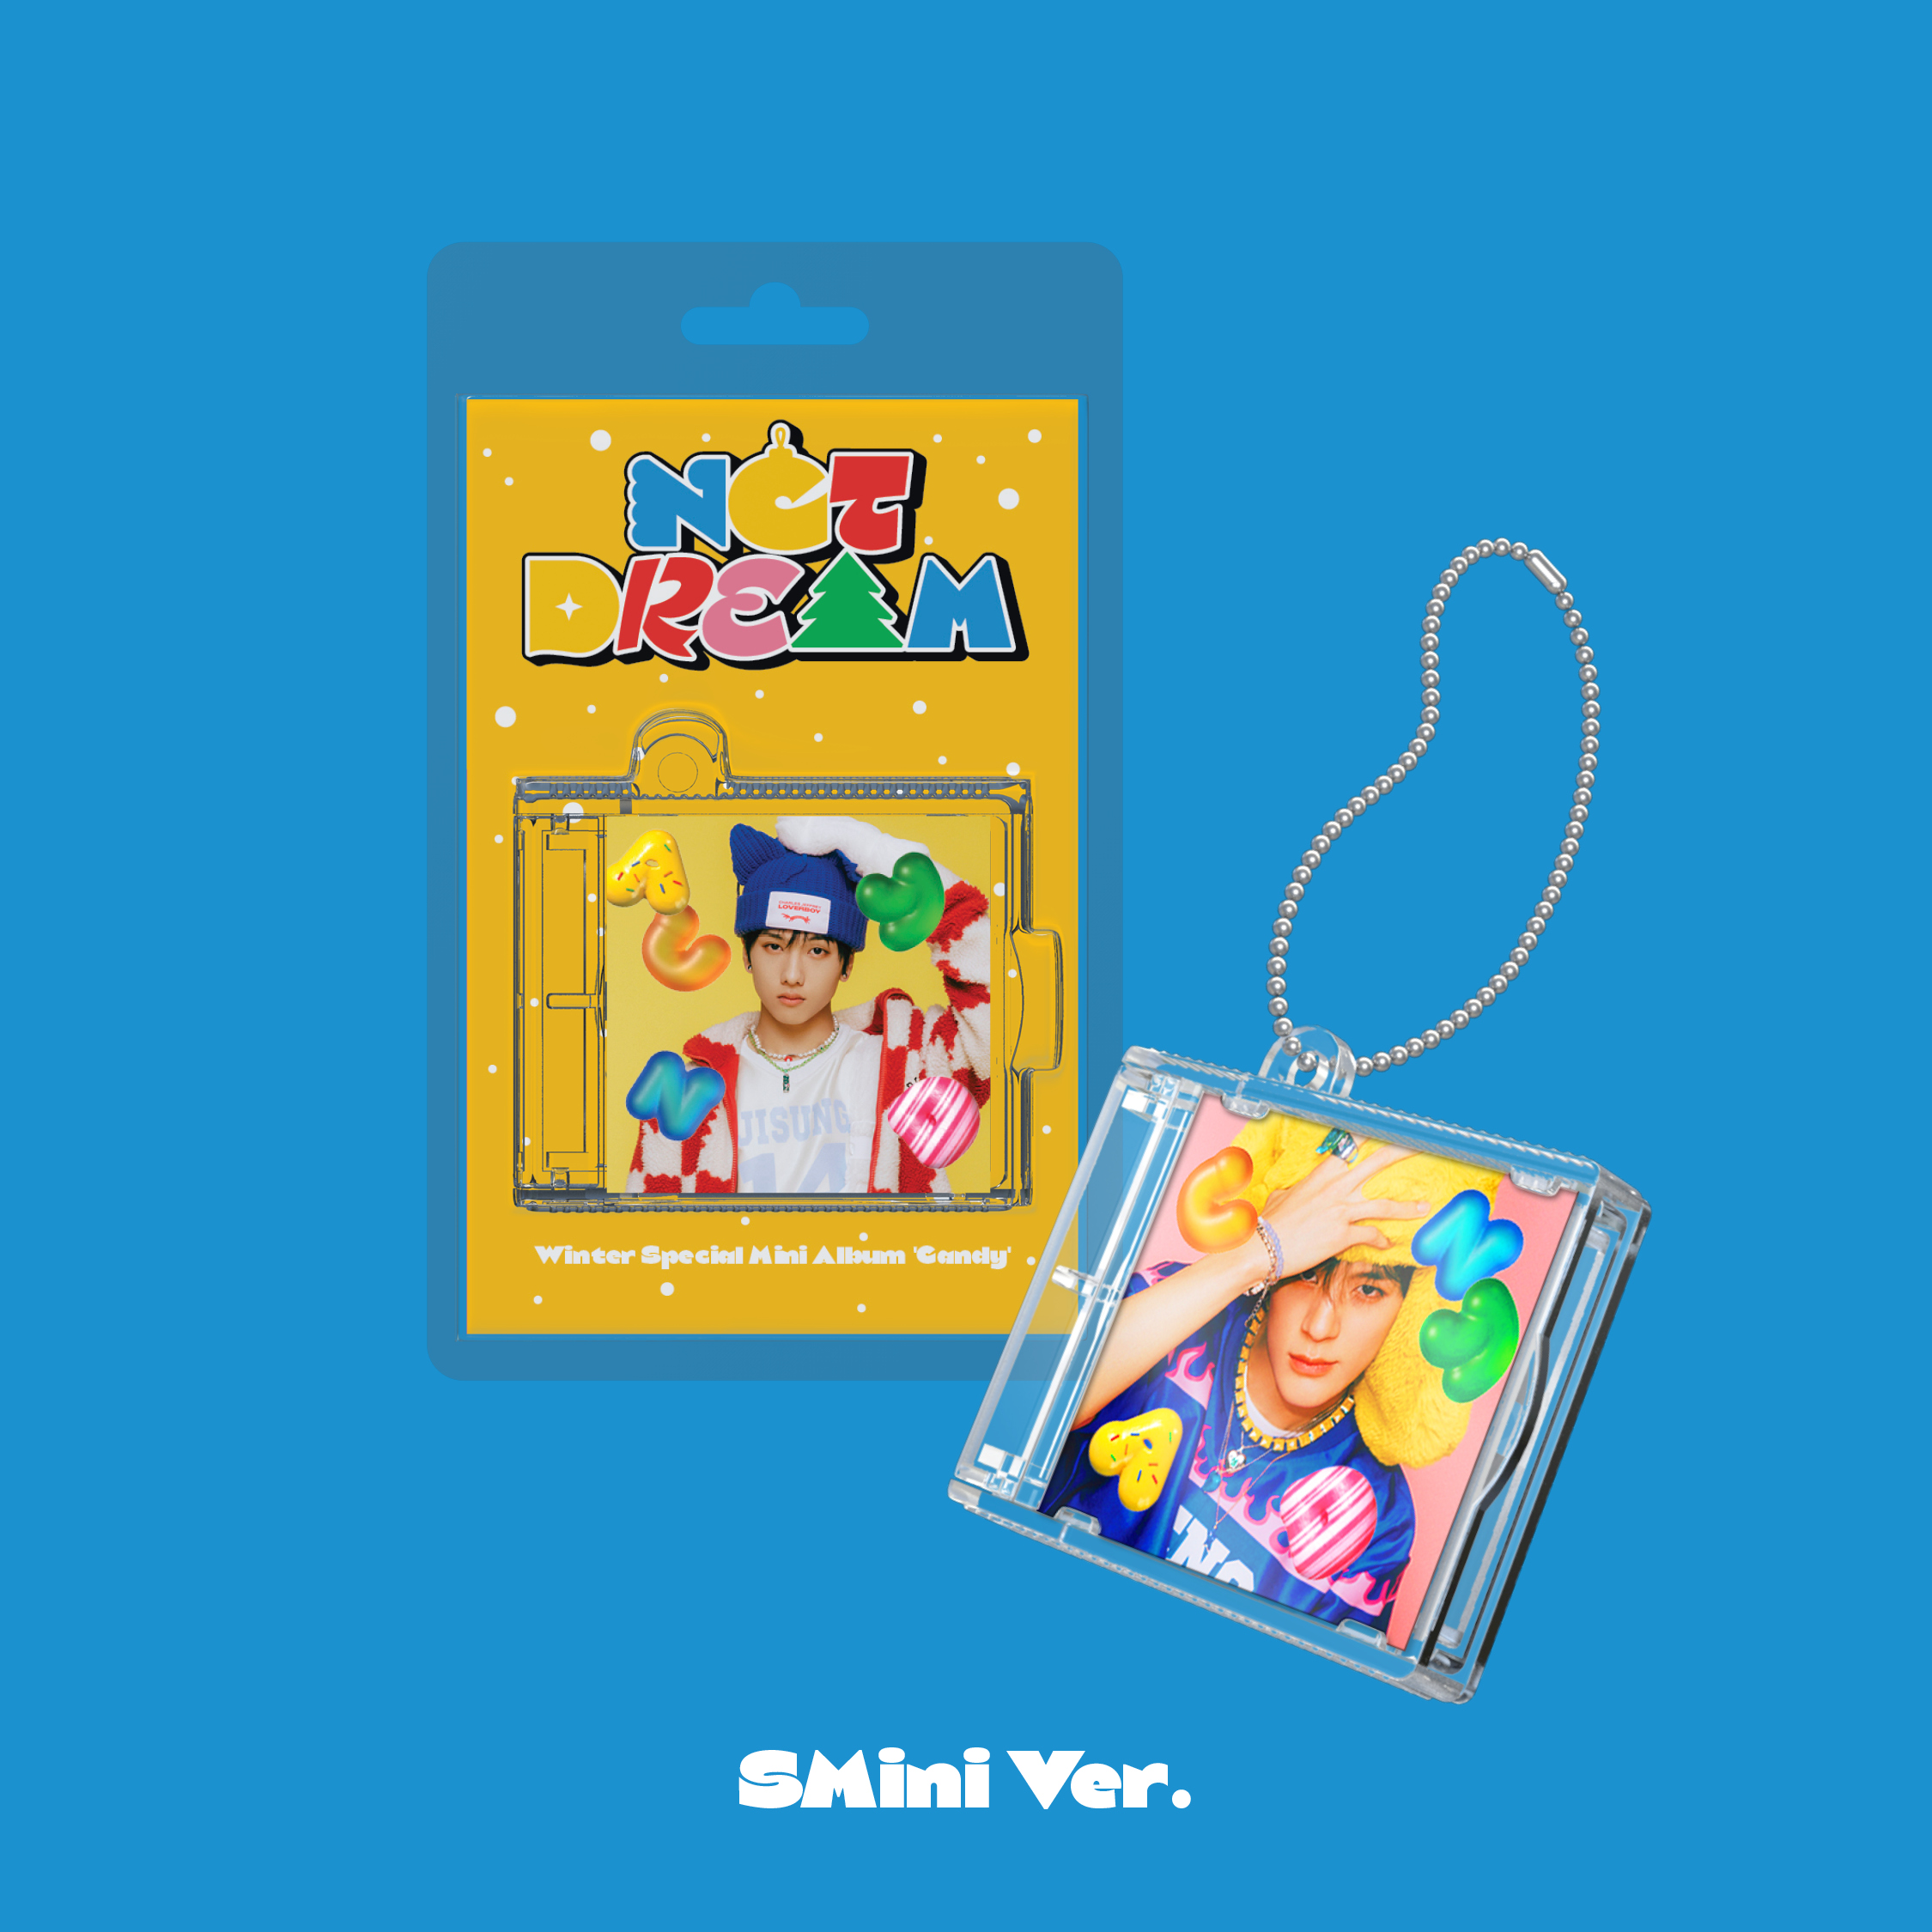 [全款 裸专 第二批 (截止至12.25早7点)] NCT DREAM - Winter Special Mini Album [Candy] (SMini Ver.) (Smart Album) (随机版本)_划人赞助商